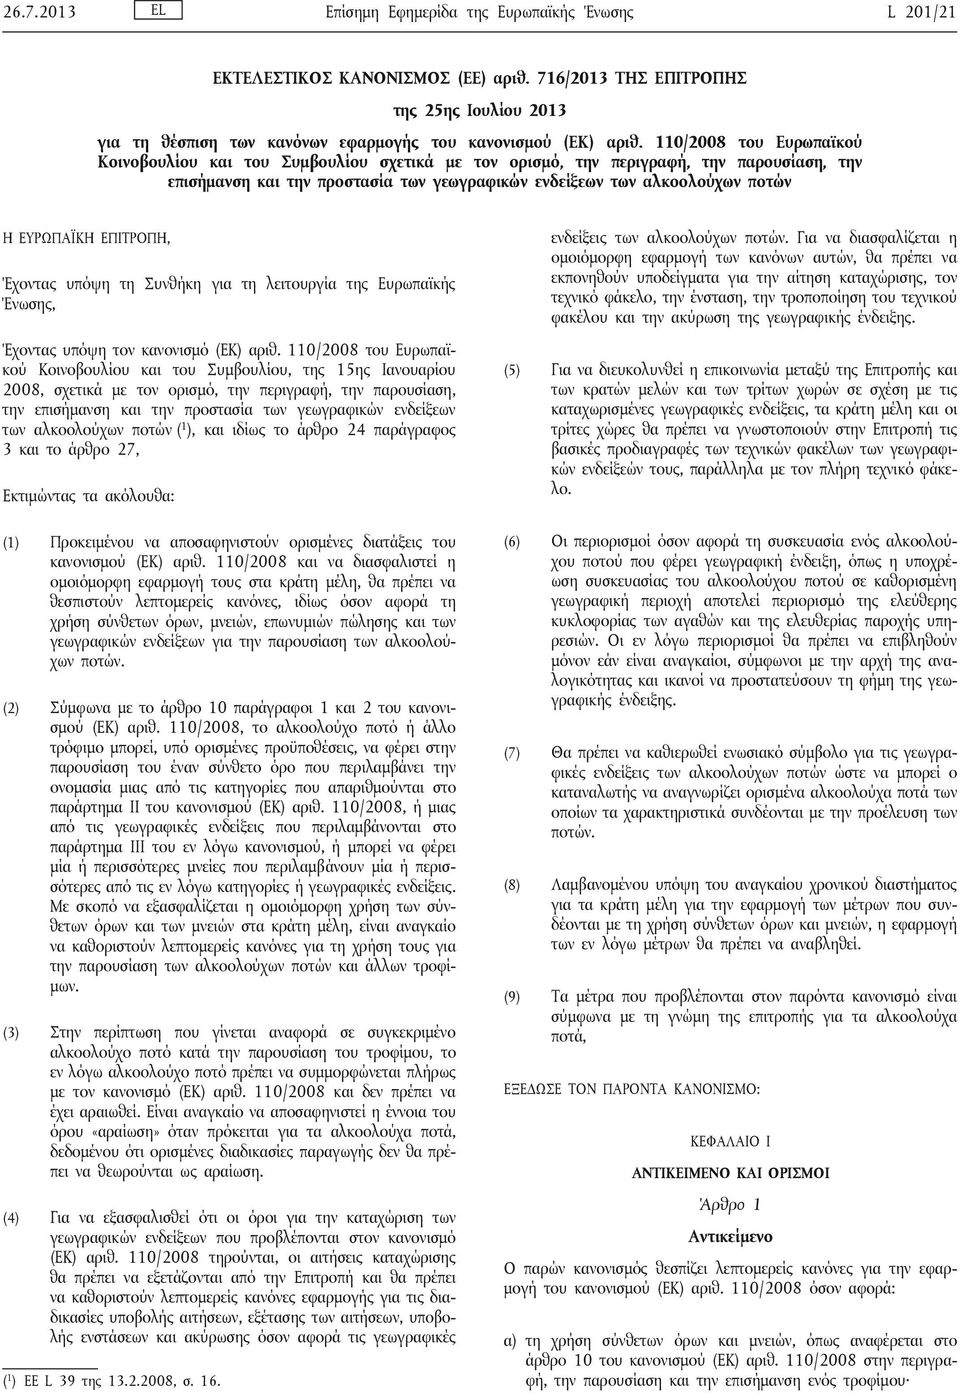 110/2008 του Ευρωπαϊκού Κοινοβουλίου και του Συμβουλίου σχετικά με τον ορισμό, την περιγραφή, την παρουσίαση, την επισήμανση και την προστασία των γεωγραφικών ενδείξεων των αλκοολούχων ποτών Η